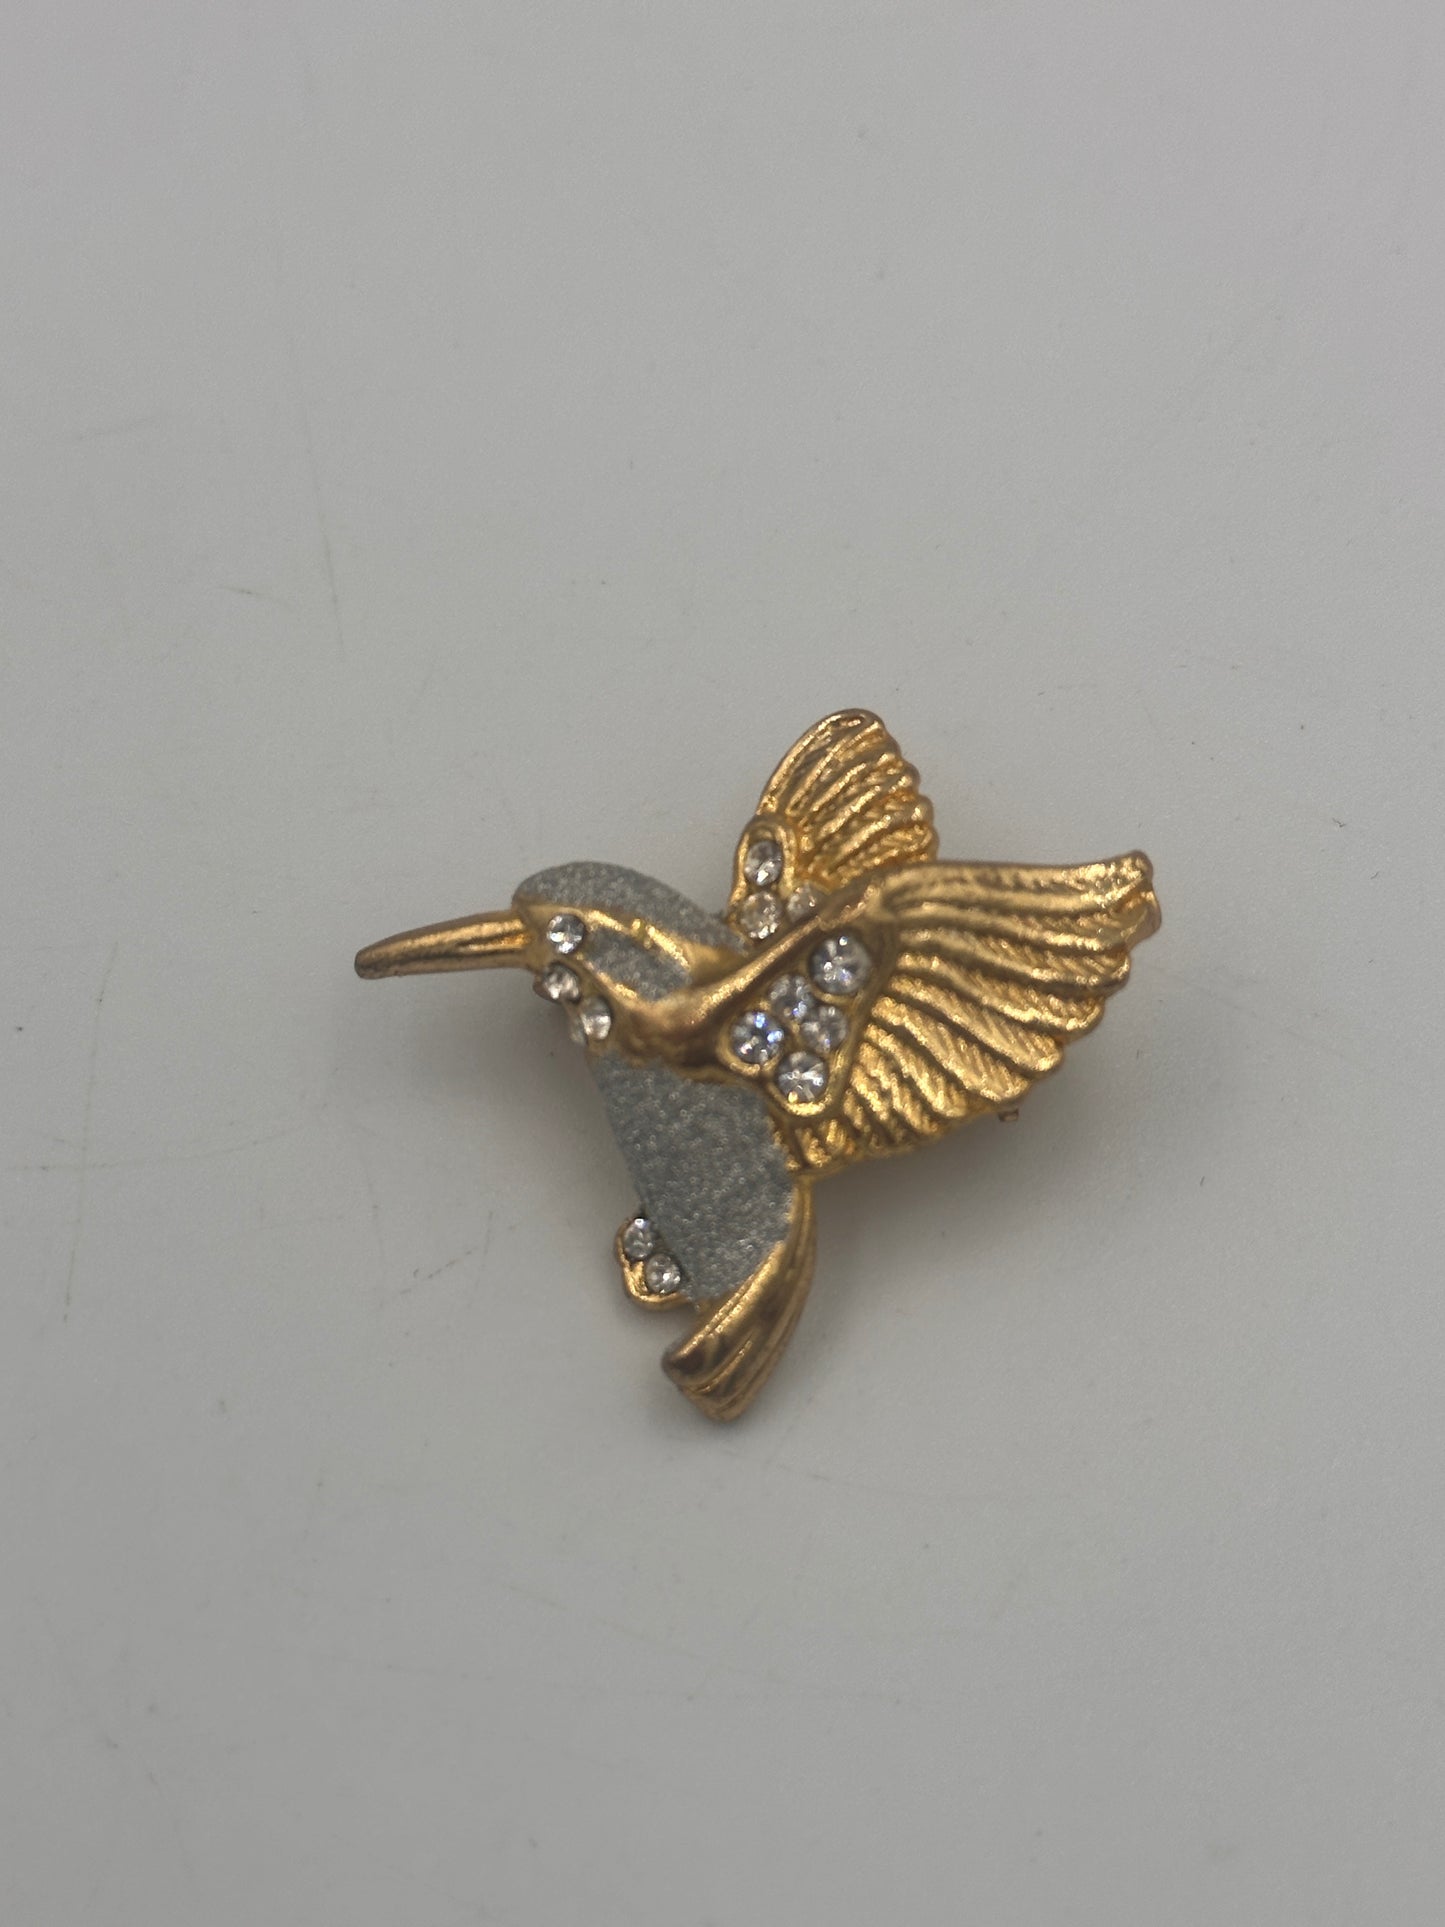 Vintage Vogel Brosche mit Zirkonia Steinen - Vergoldet